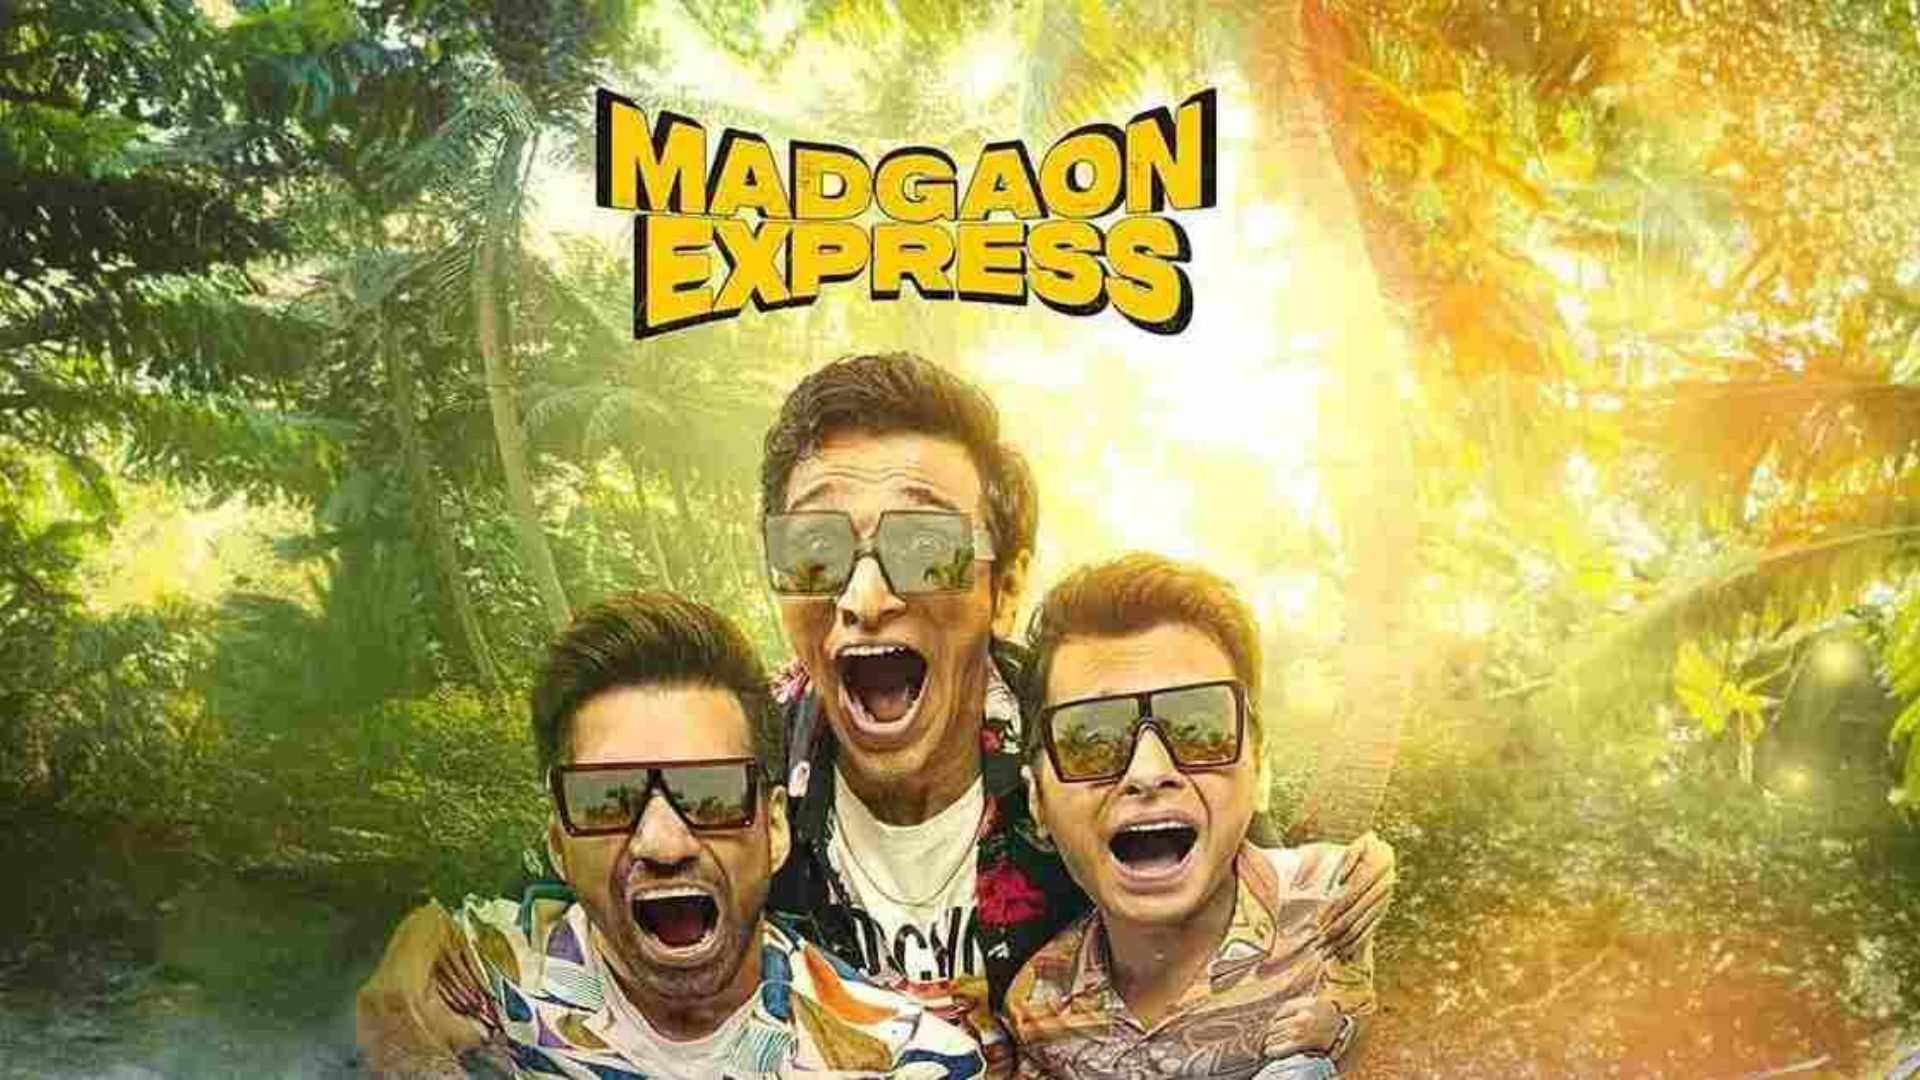 Madgaon Express box office day 2: शनिवार को डबल हुई मडगांव एक्सप्रेस की कमाई, इतने करोड़ हुआ कलेक्शन!